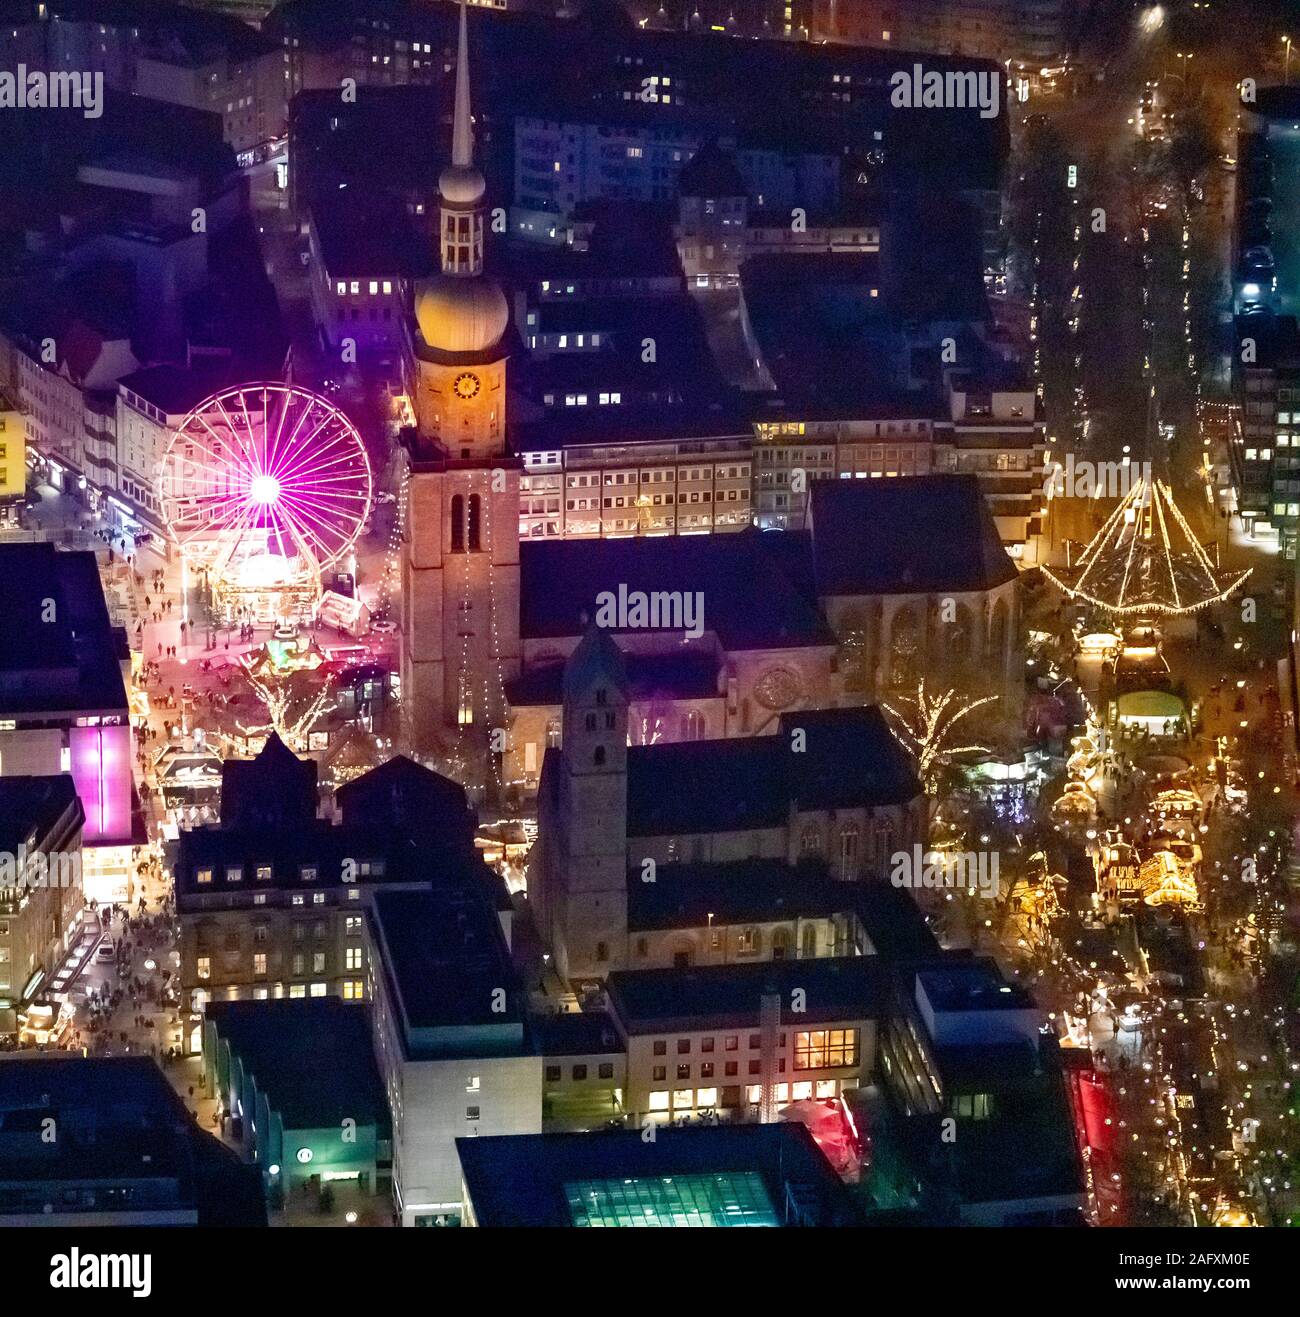 Foto aerea, mercato di Natale di Dortmund tra Reinoldikirche e Hansamarkt, ruota panoramica Ferris, Dortmund, la zona della Ruhr, Renania settentrionale-Vestfalia, Germania, Dor Foto Stock